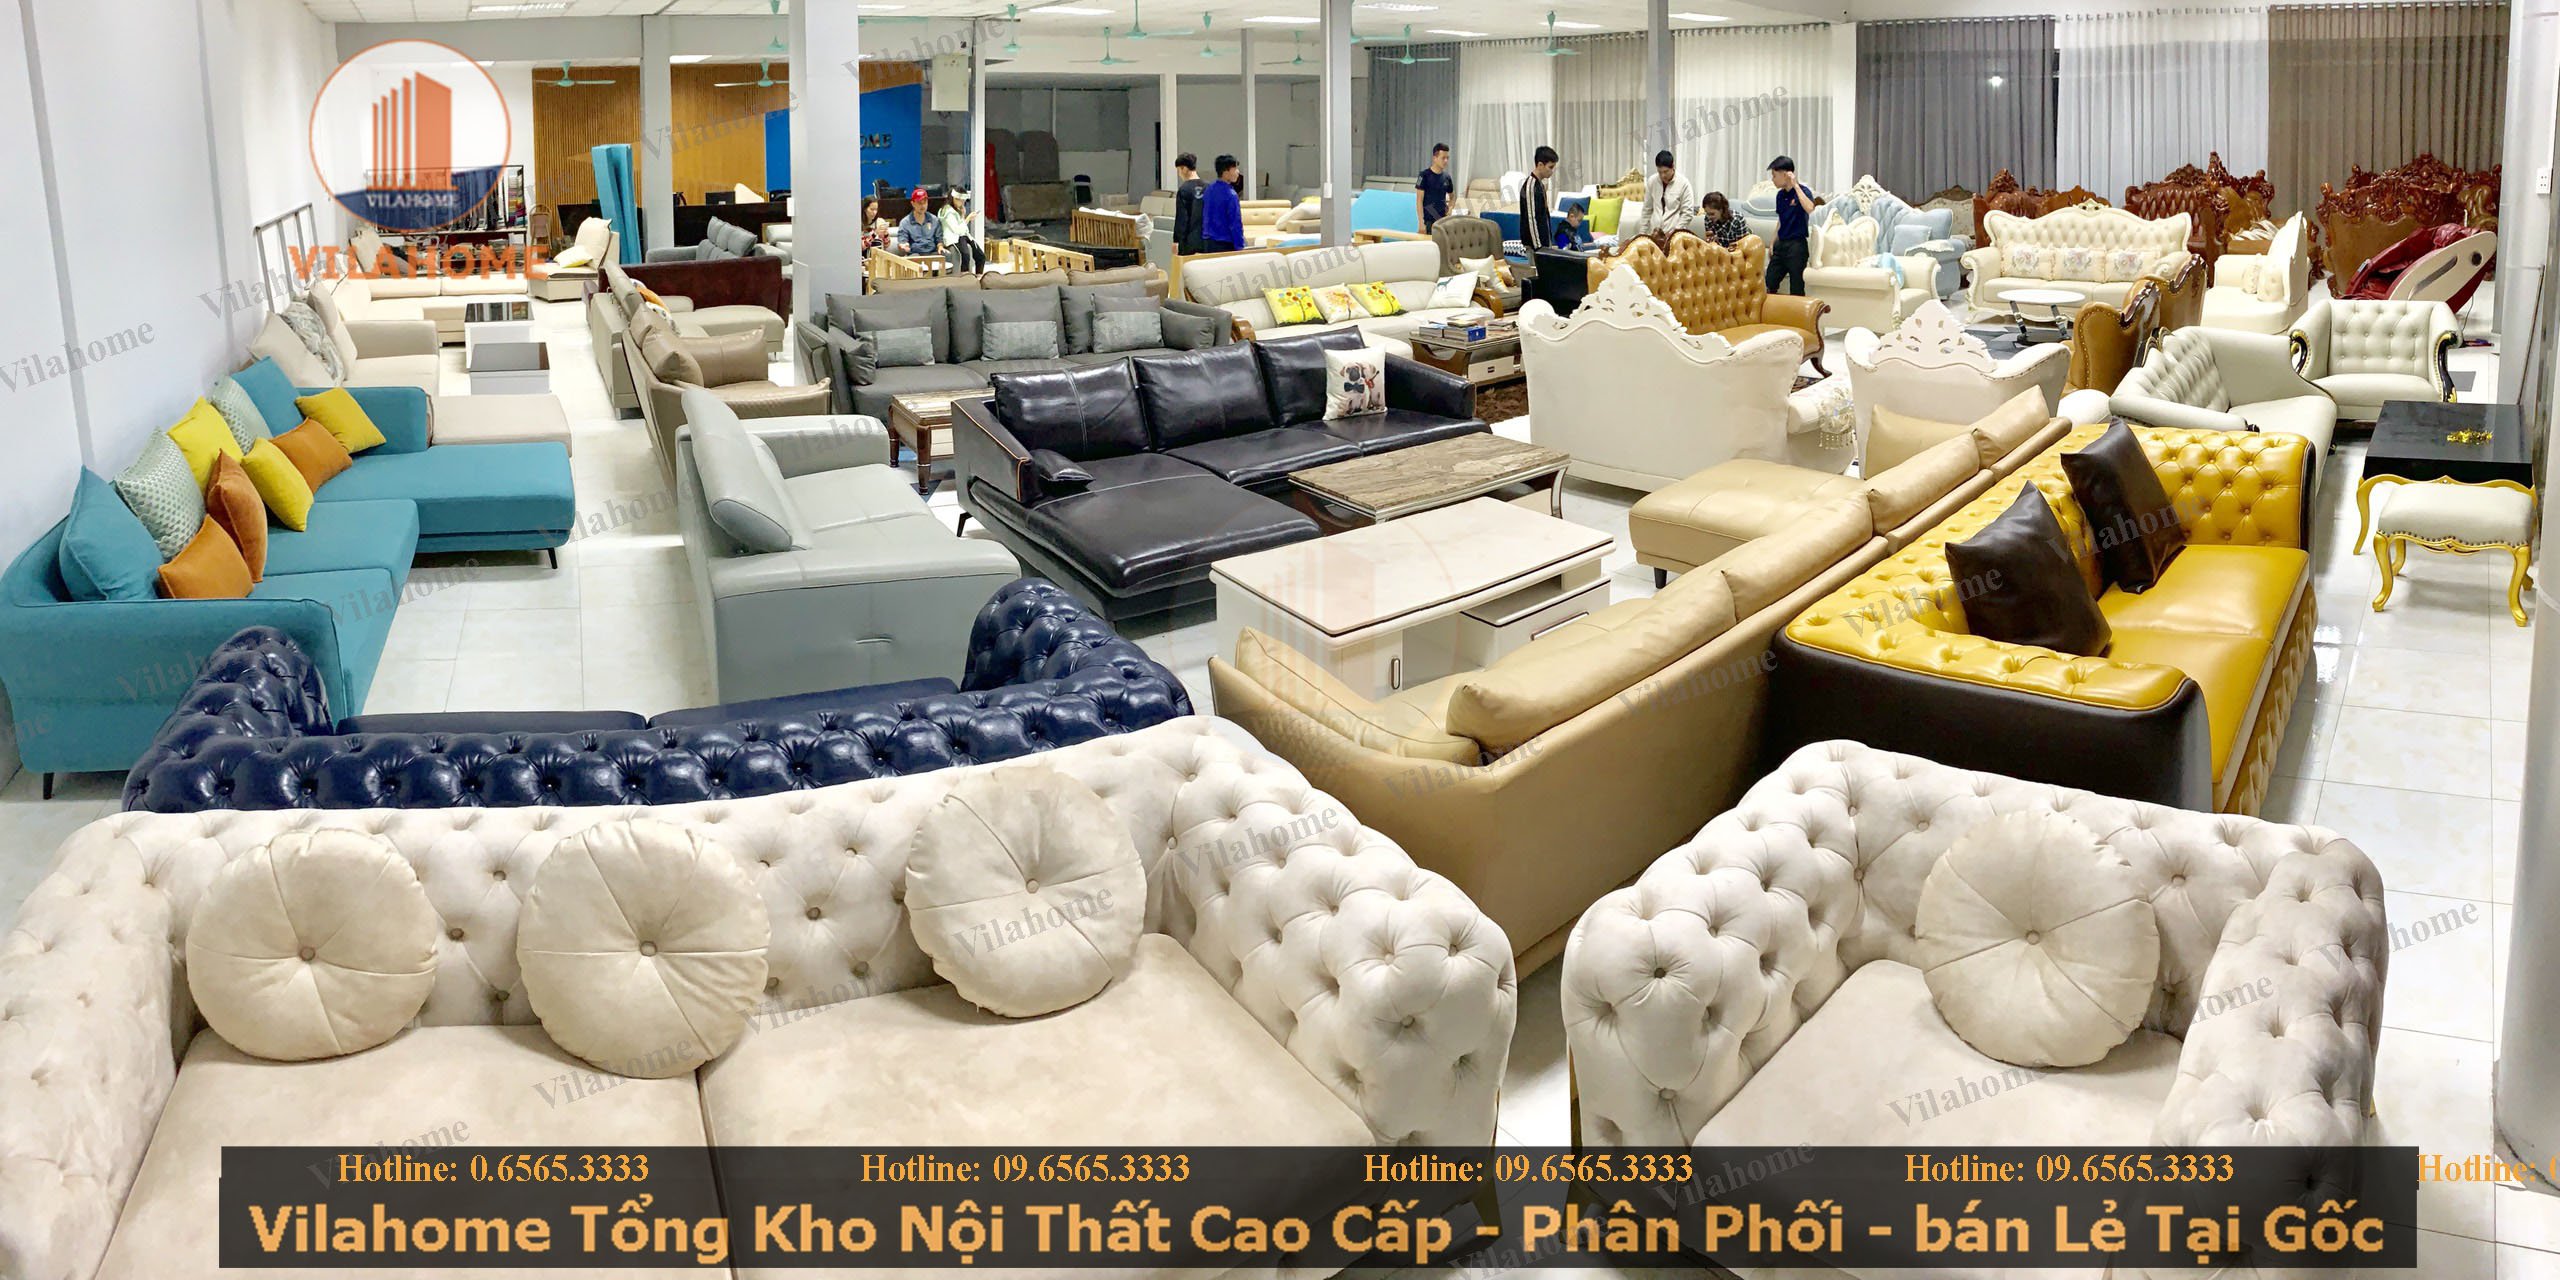 Mua sofa Hà Nội: Tìm kiếm sofa đẹp và chất lượng với giá thành hợp lý tại Hà Nội? Hãy đến với chúng tôi để có những sự lựa chọn hoàn hảo cho không gian sống của bạn. Với đội ngũ nhân viên tư vấn tận tình, bạn sẽ chắc chắn tìm được sản phẩm ưng ý nhất.